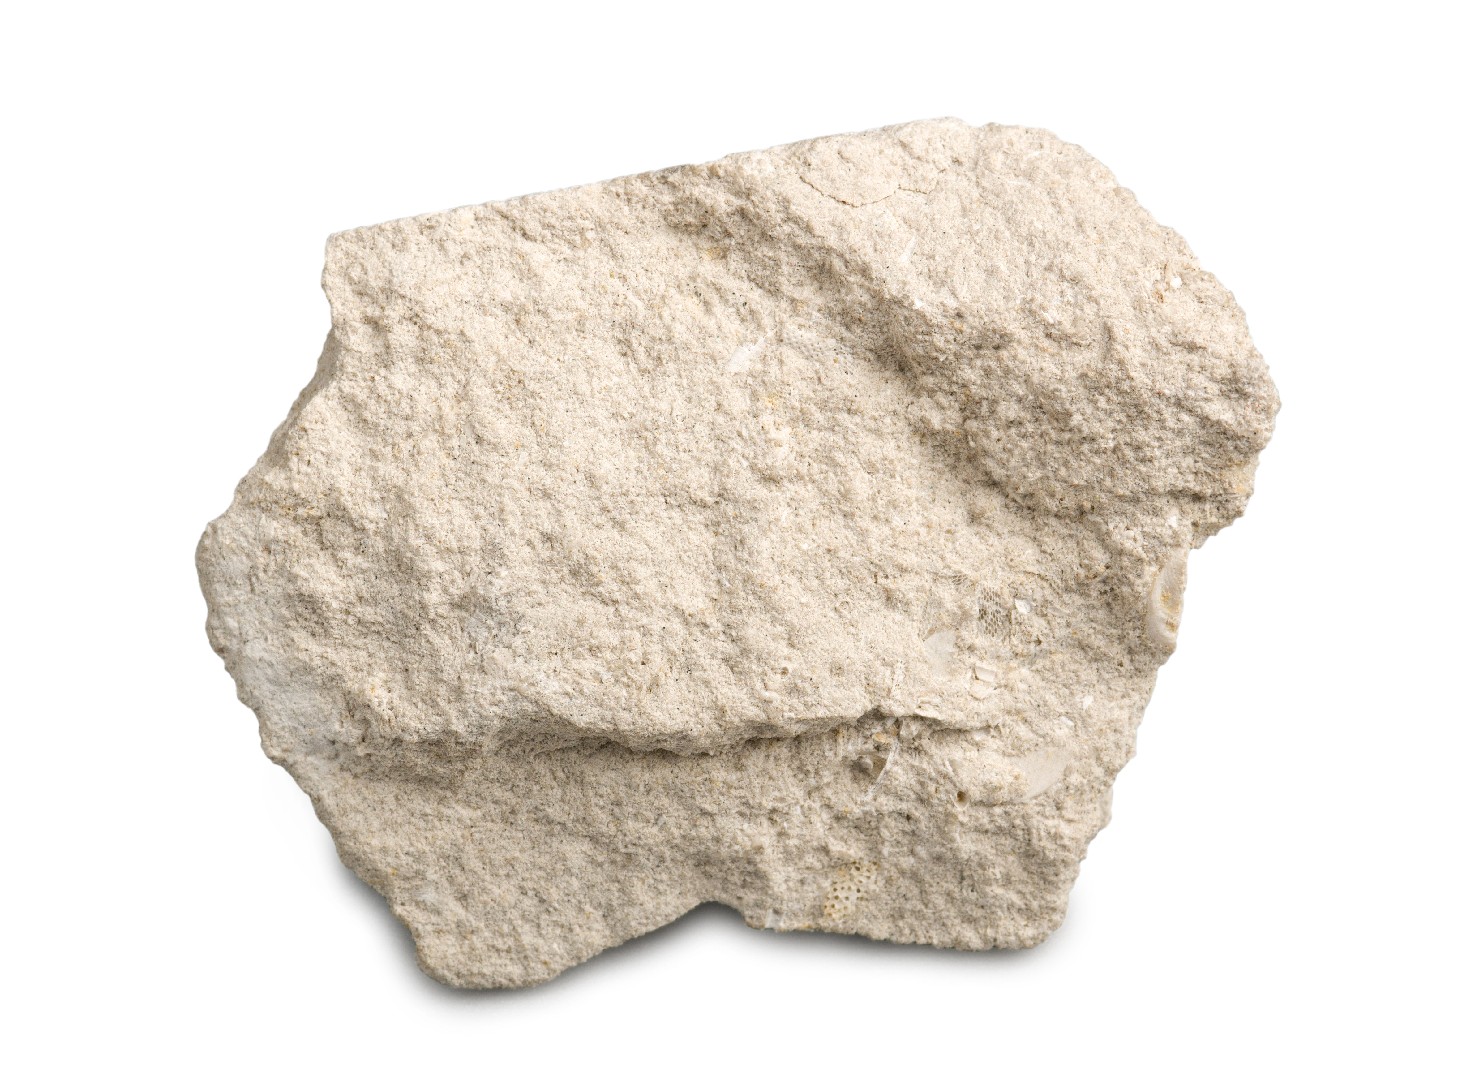 Kalksteen (Limestone)